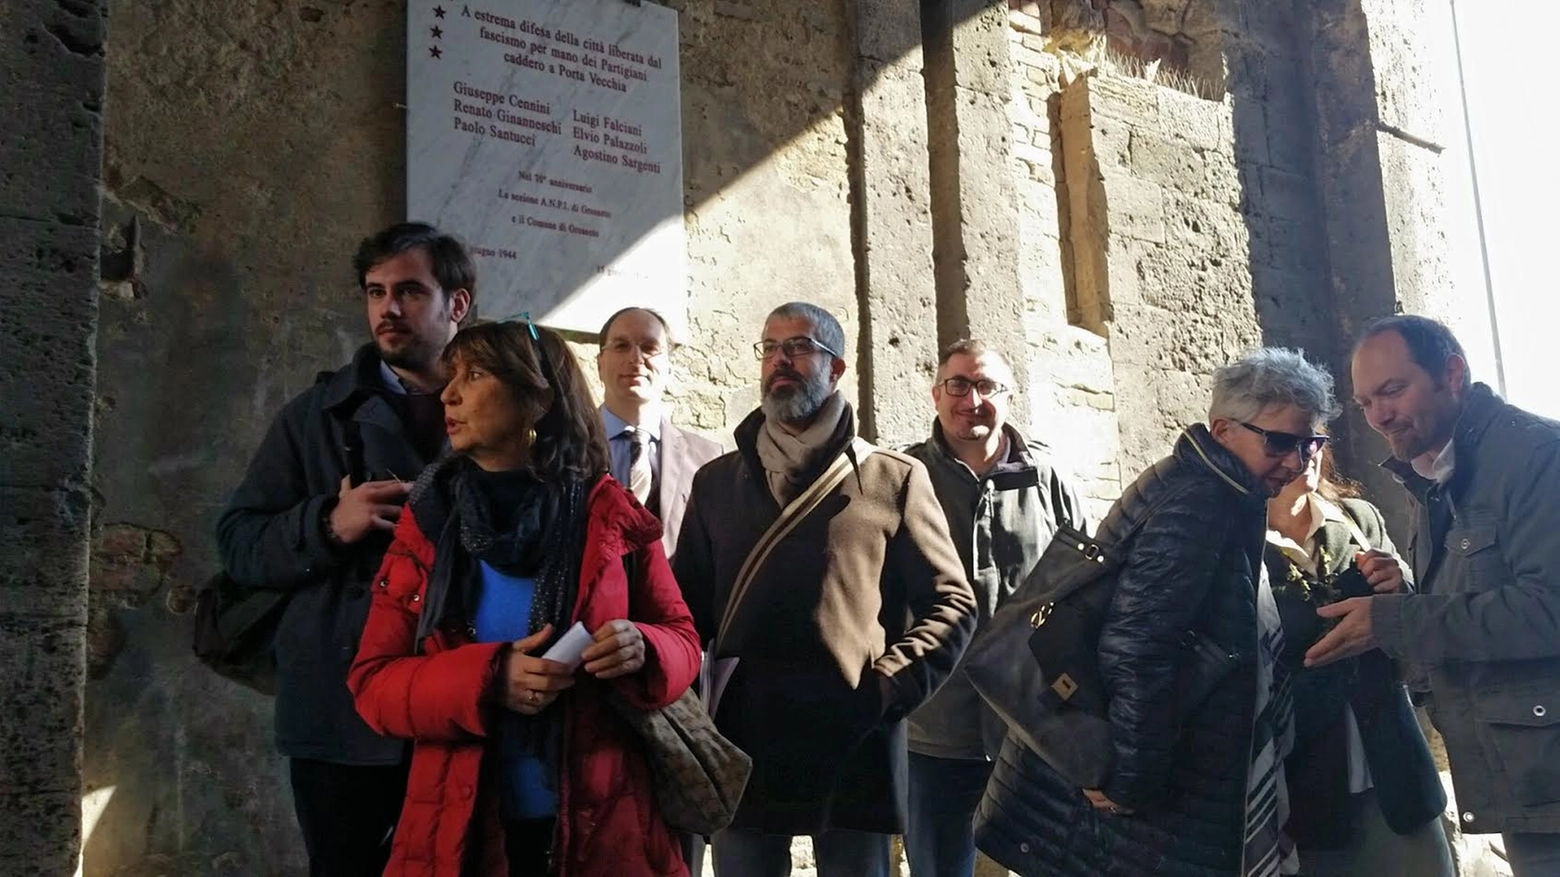 Le opposizioni in Consiglio comunale a Grosseto unite nel valore dell'antifascismo